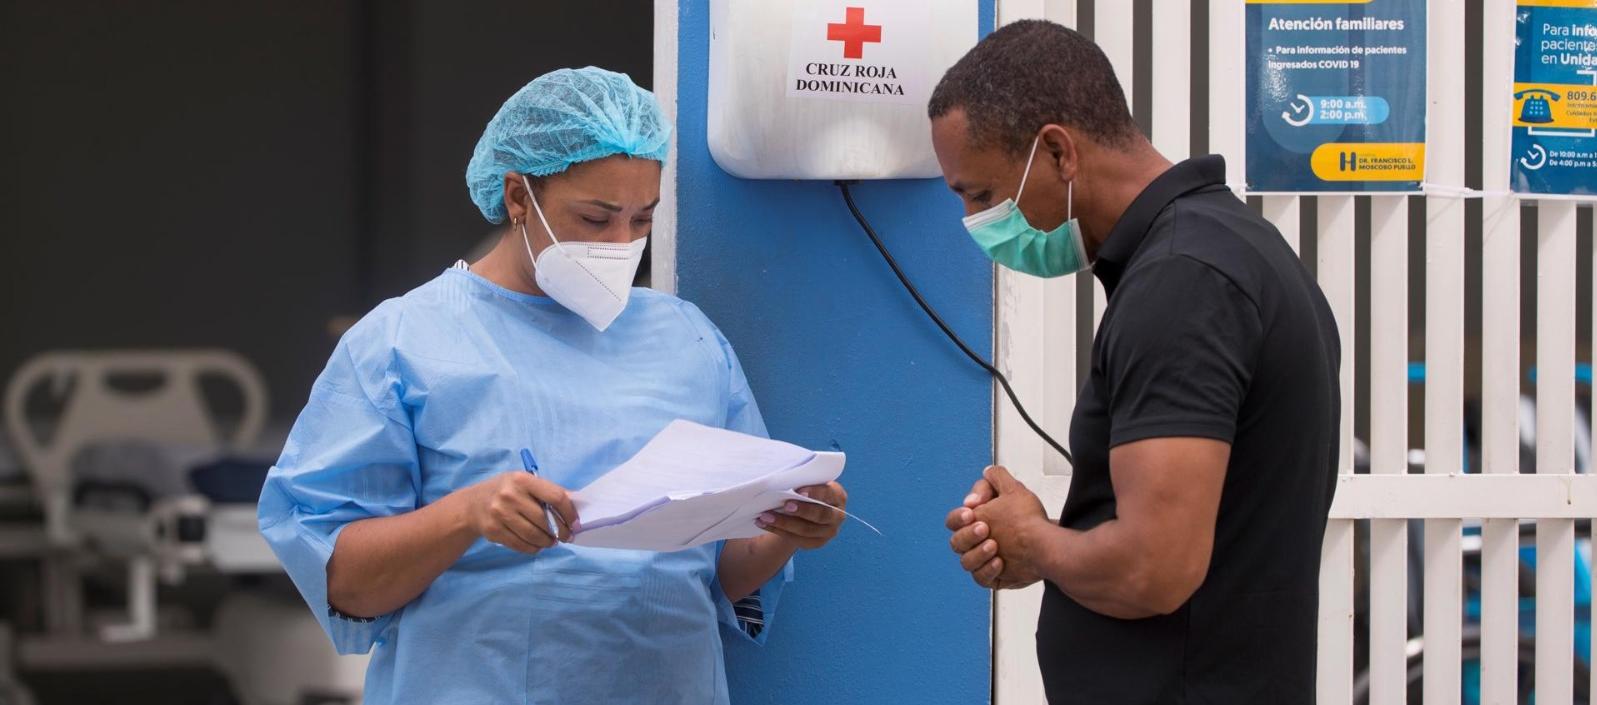 República Dominicana reportó 793 casos de Covid-19 en la última semana 